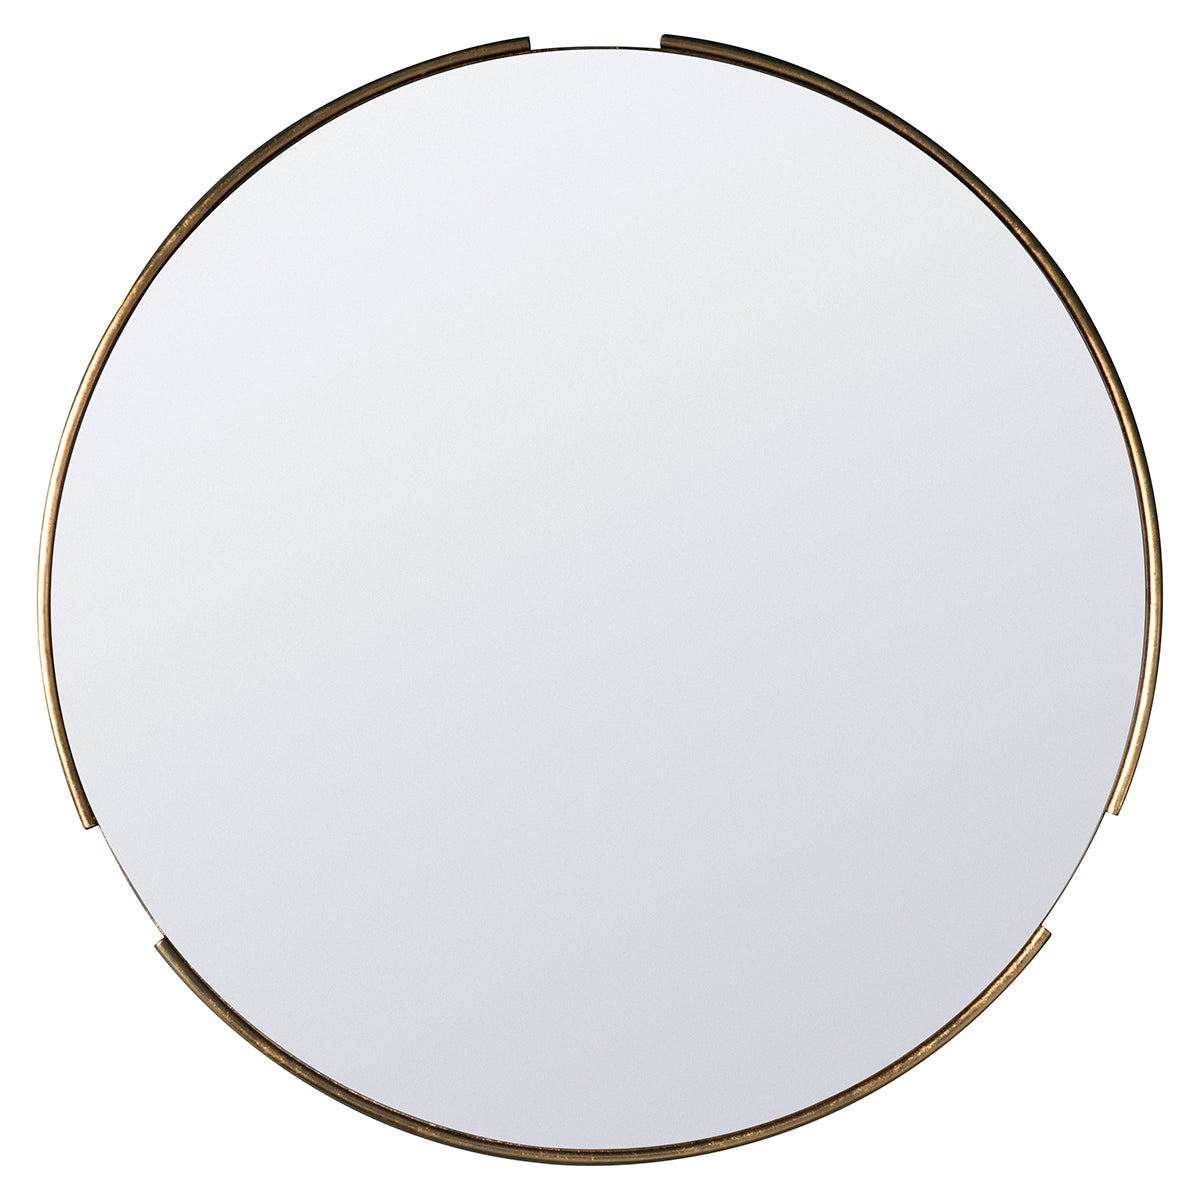 Fitz Round Mirror Gold